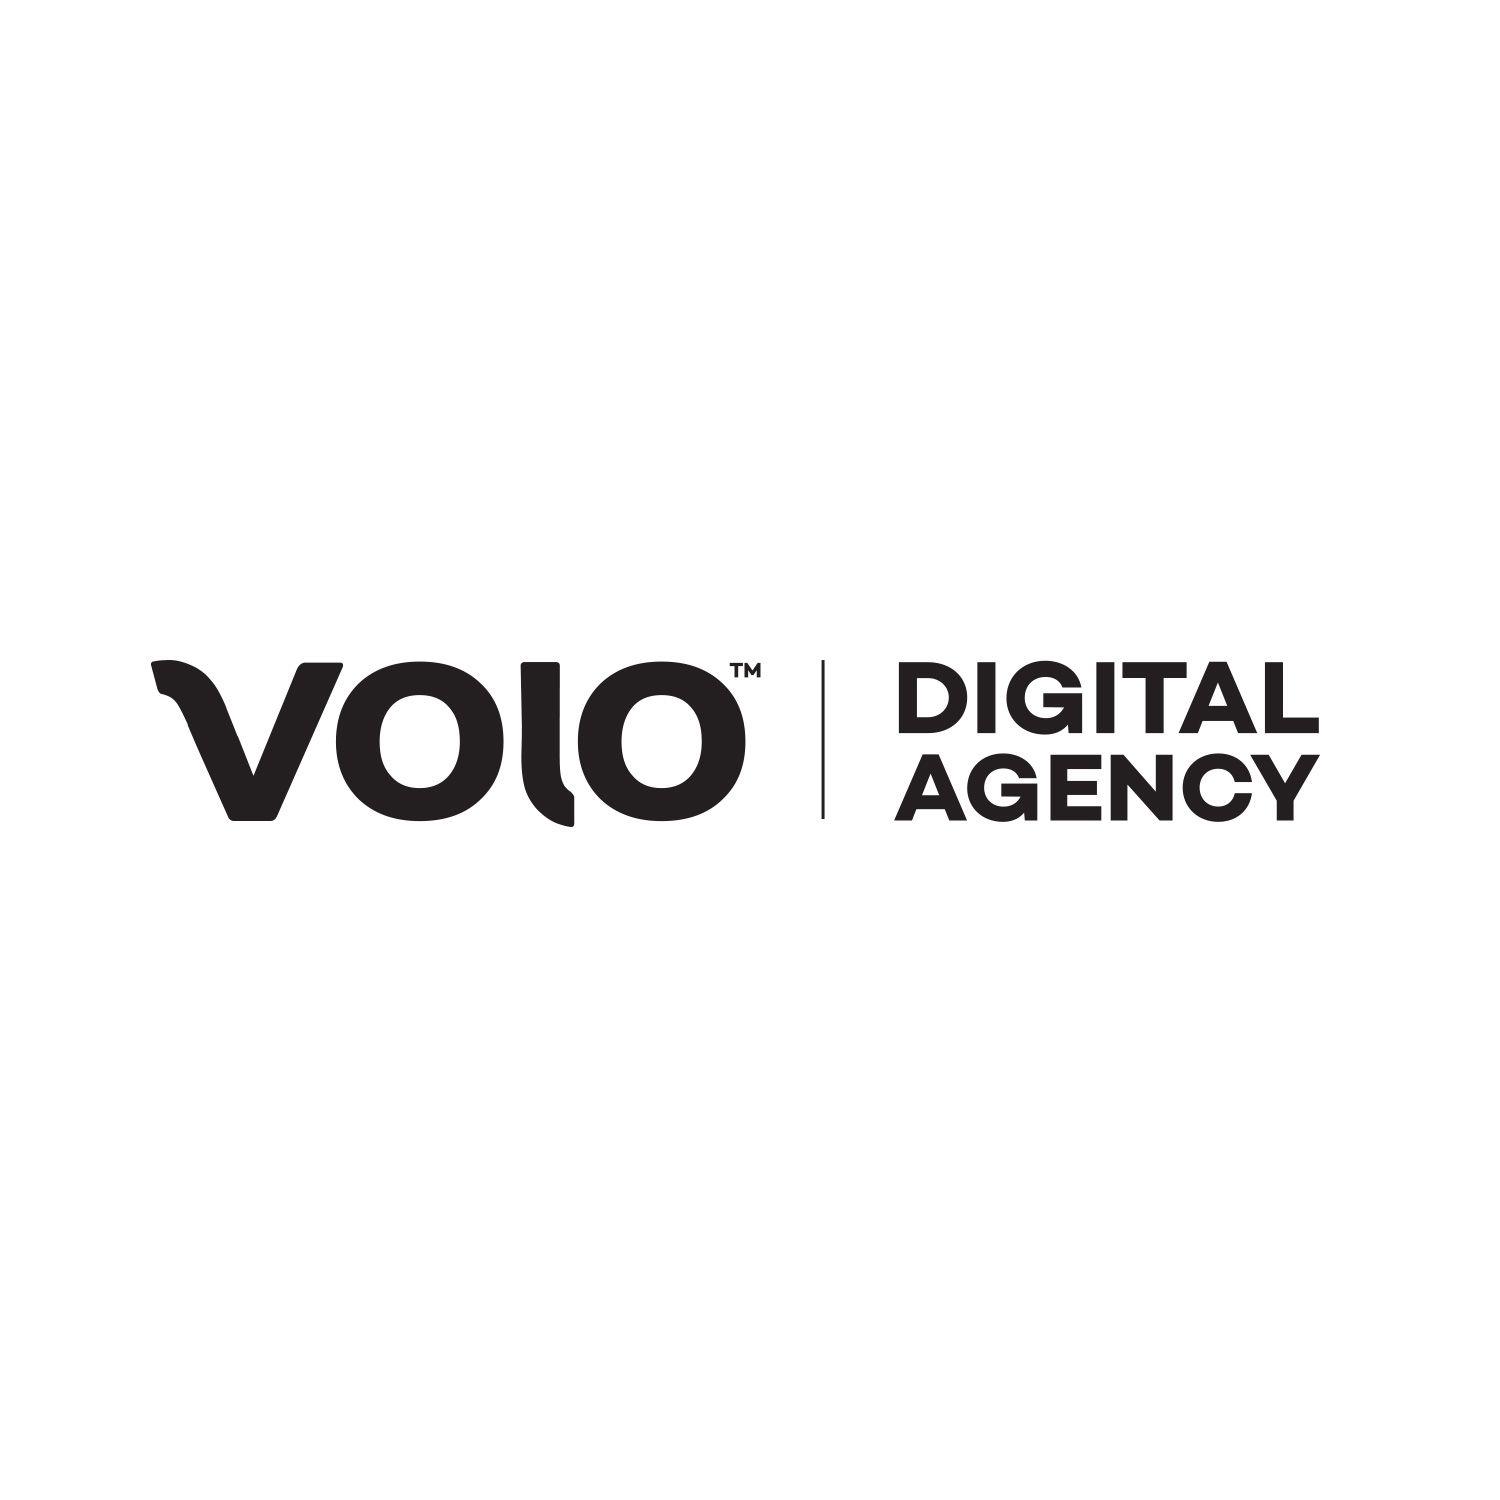 Agency Logo - Branding Breakdown. VOLO Digital Agency